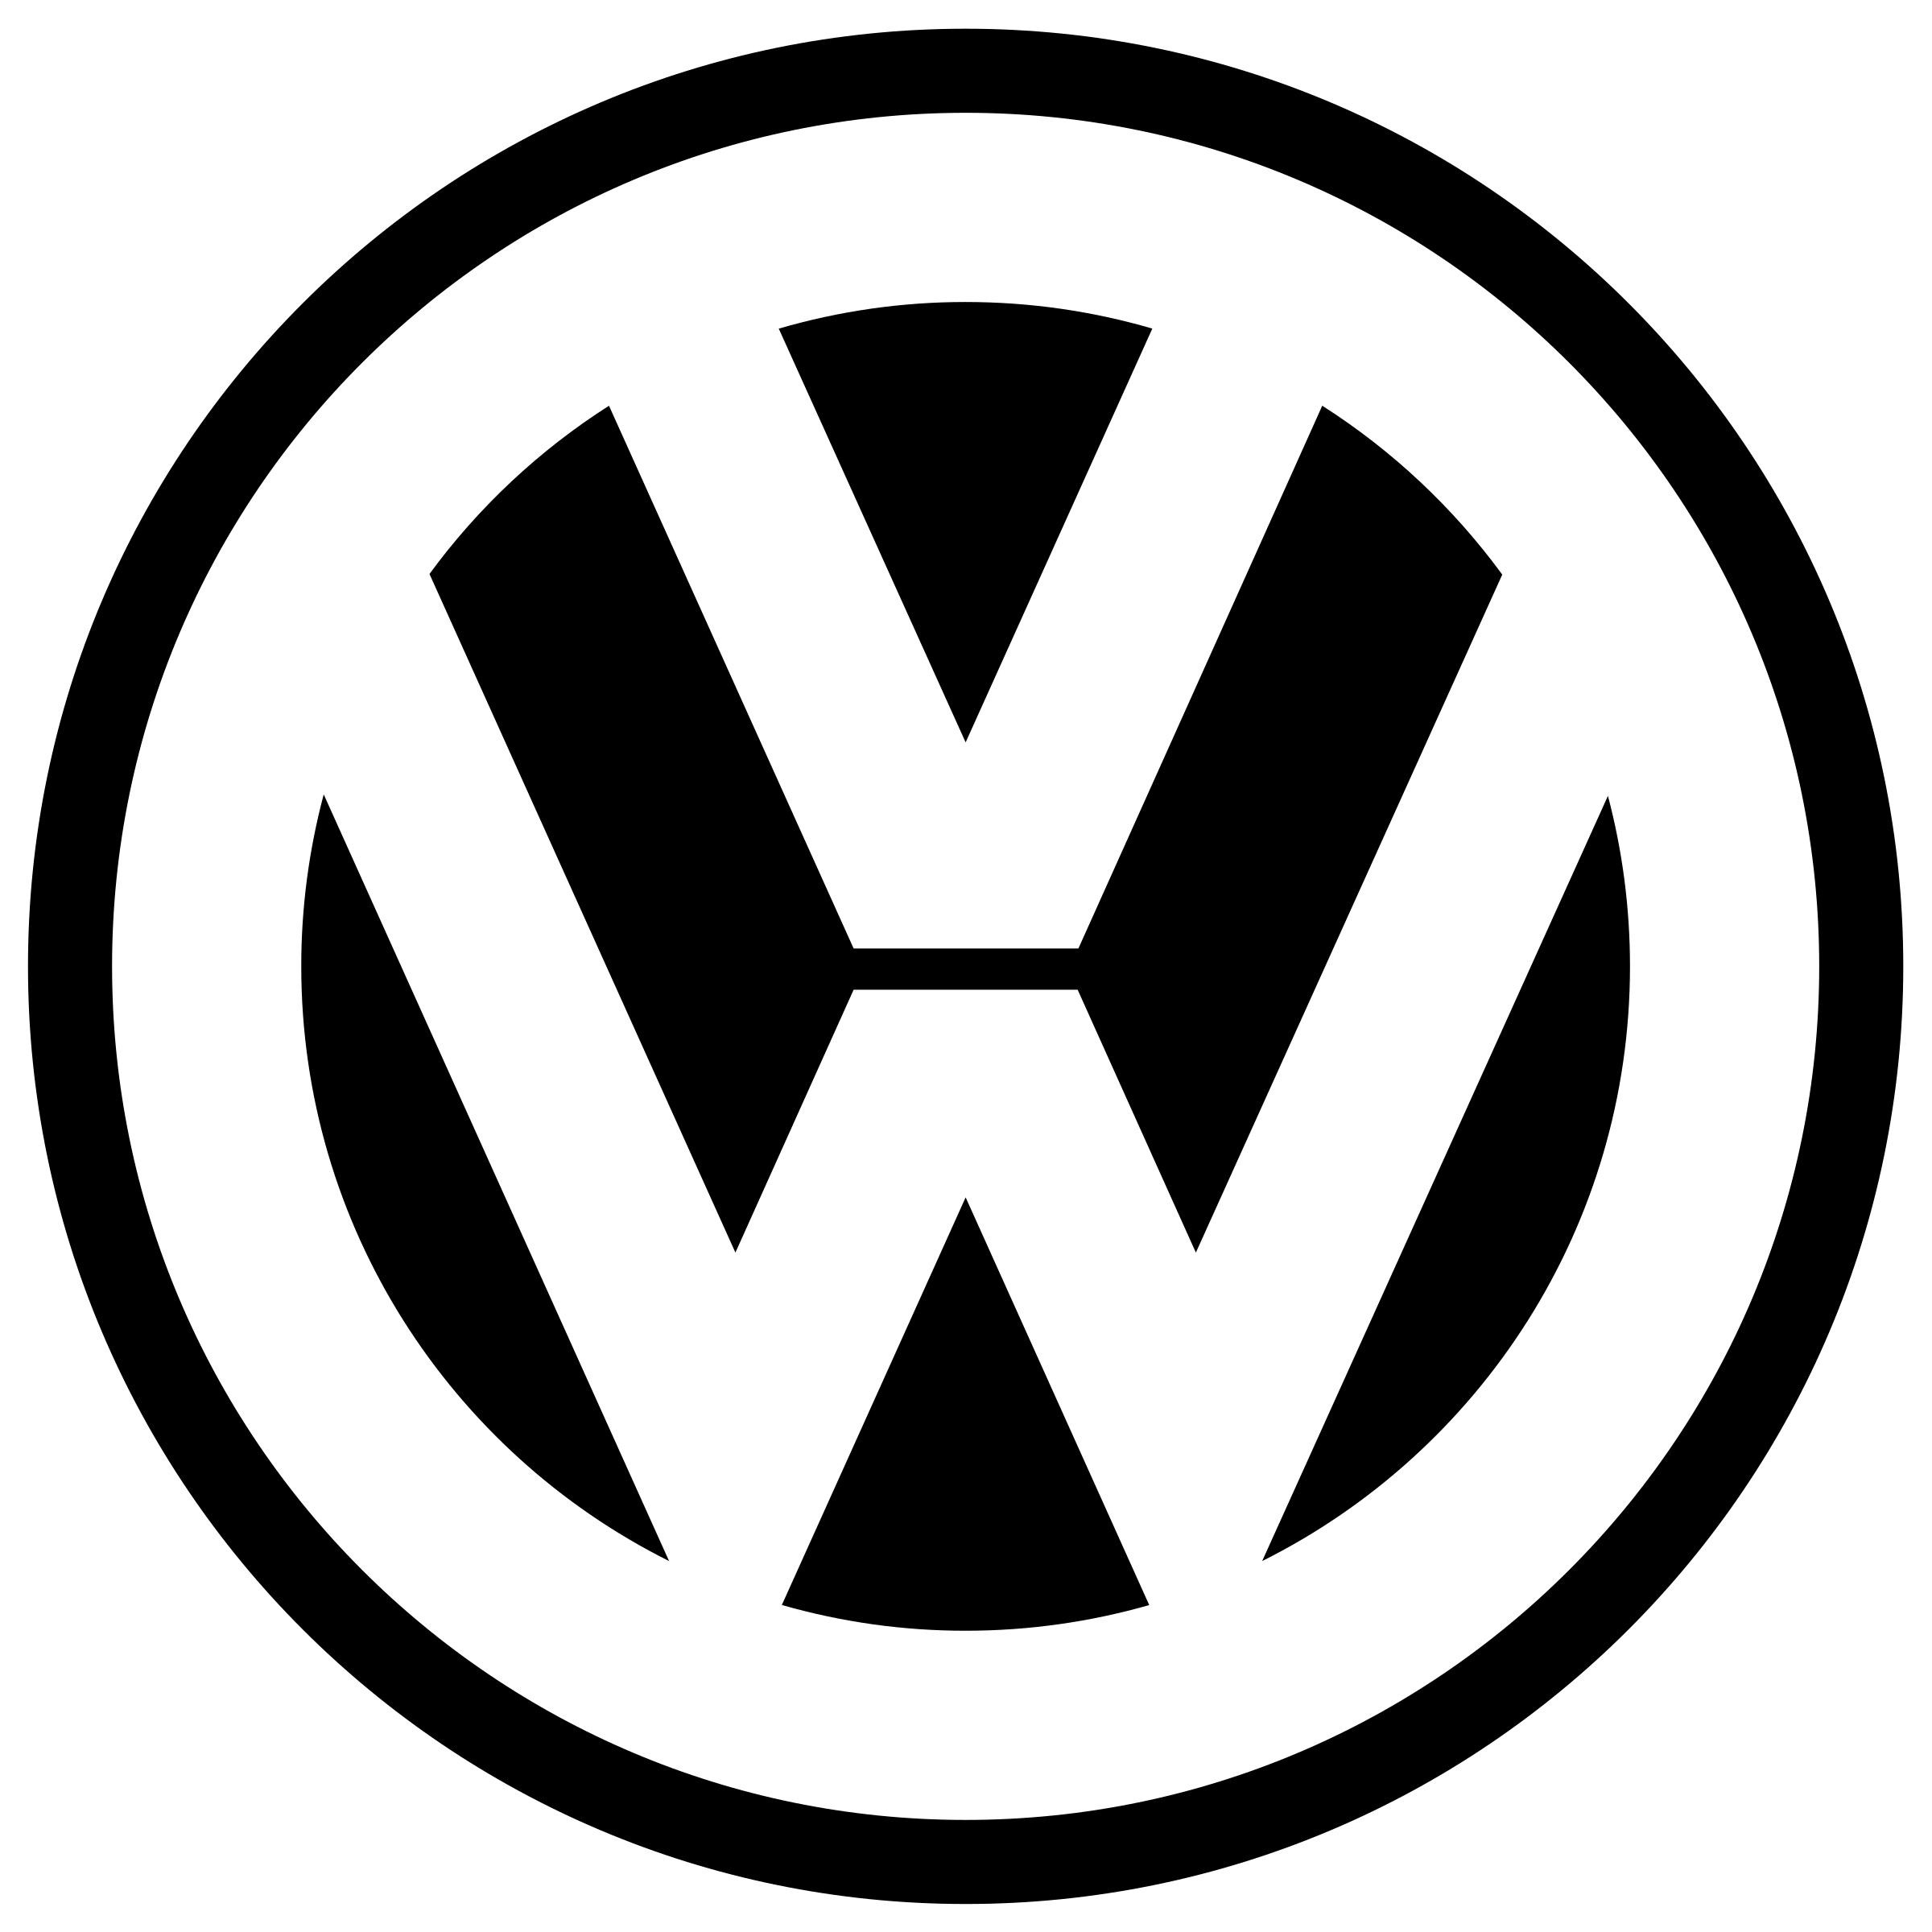 volkswagen-1-logo-png-transparent